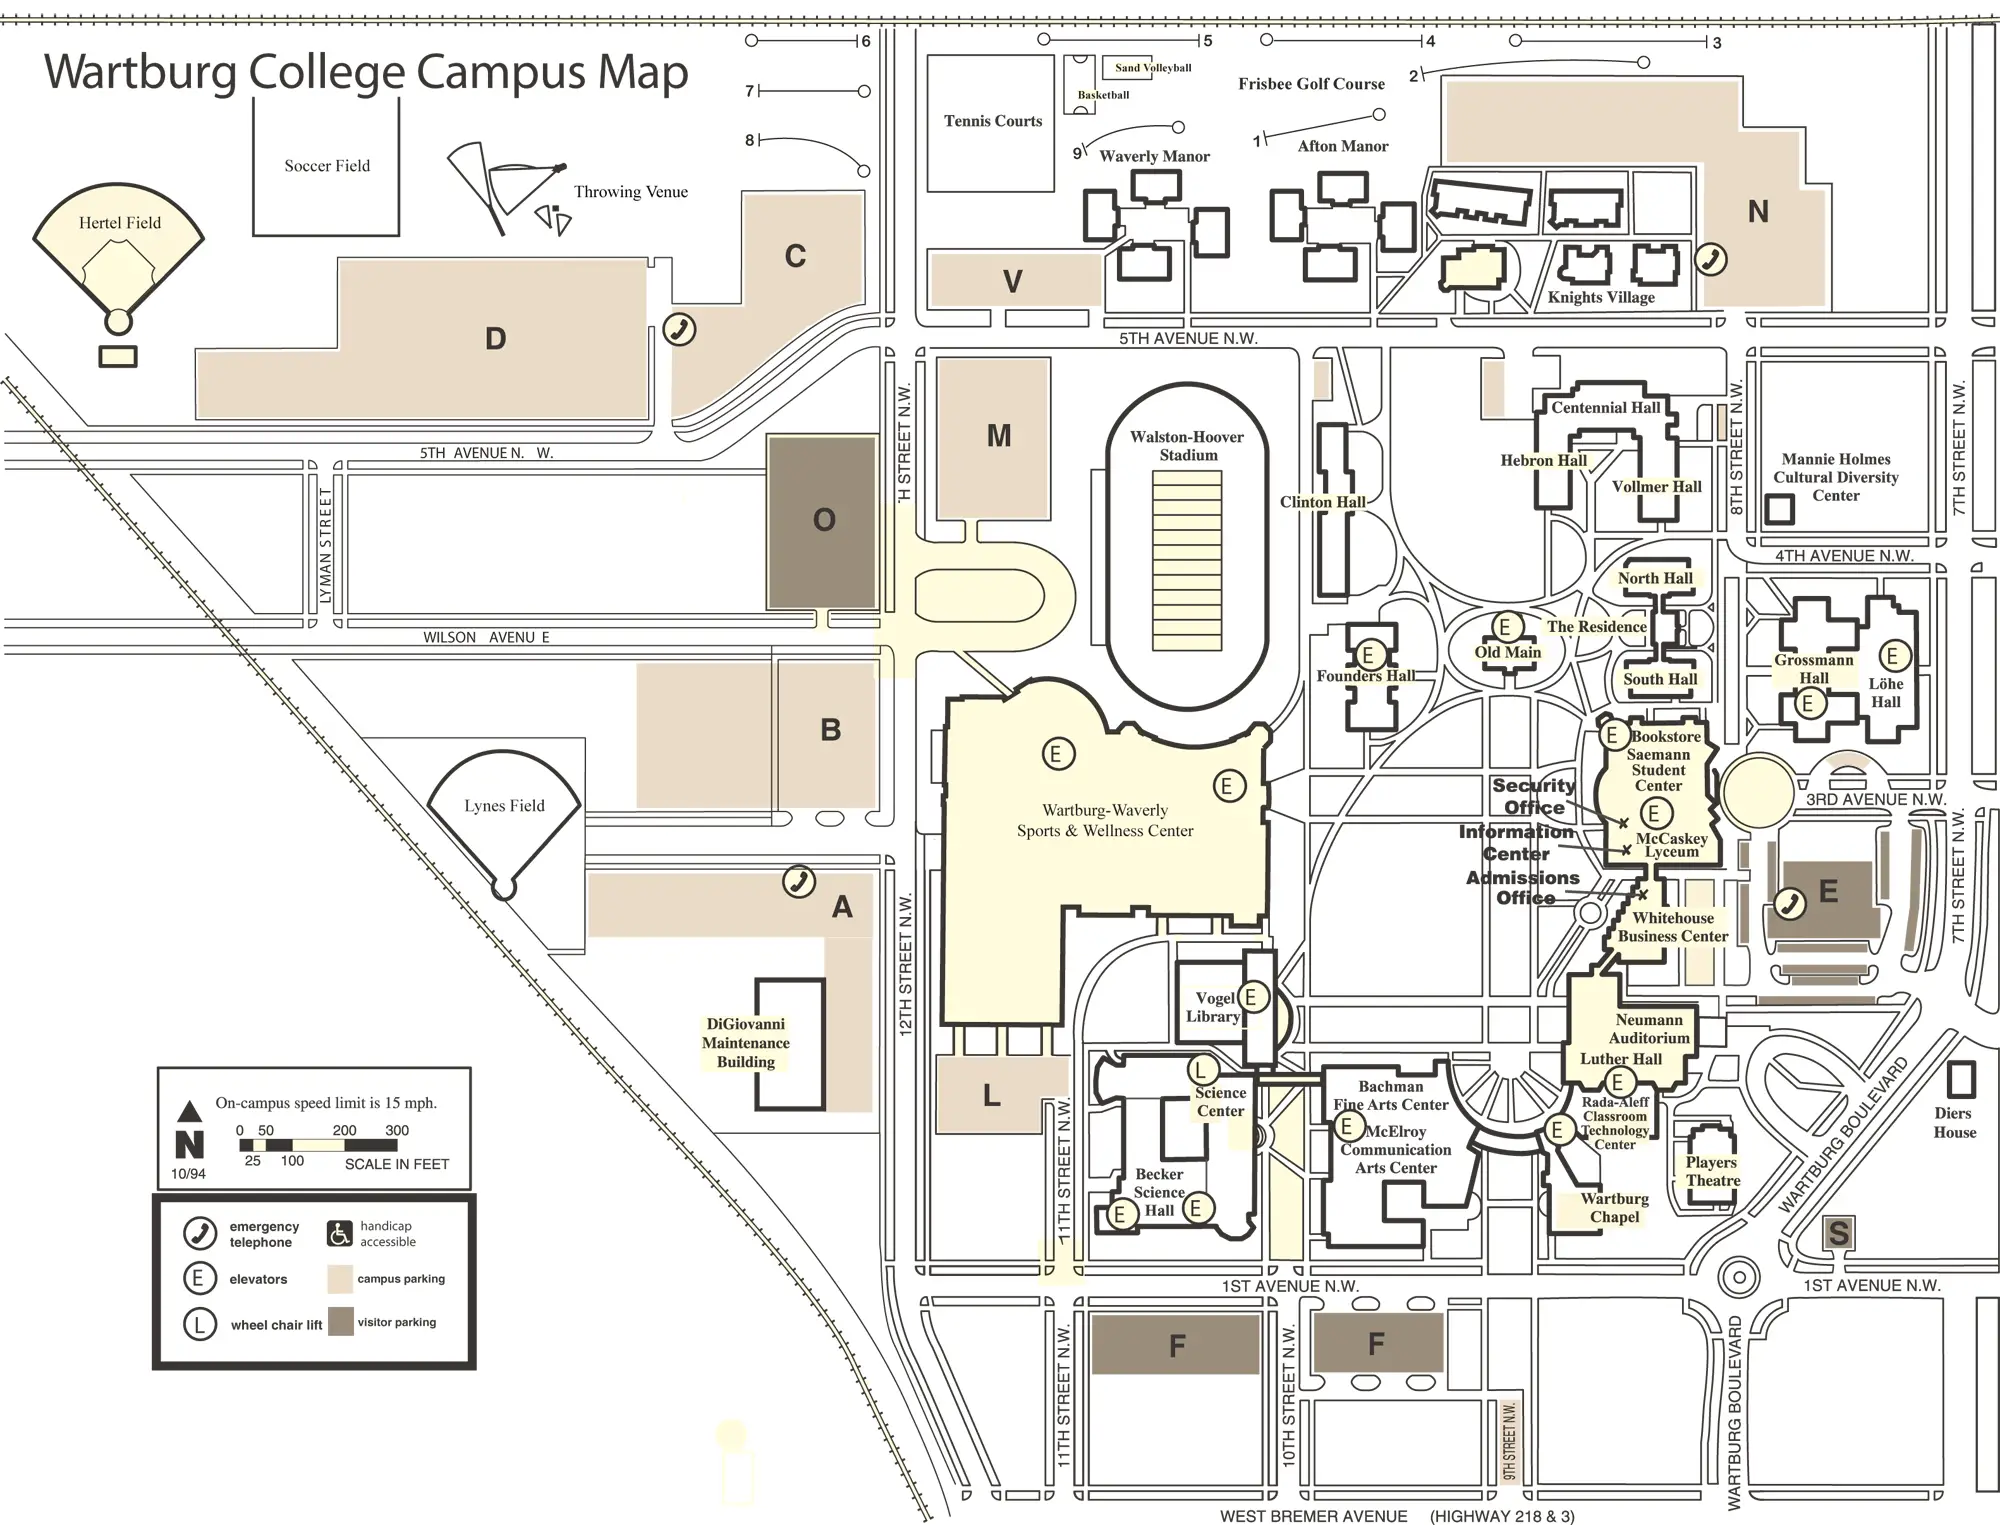 Wartburg College Campus Map - MapSof.net